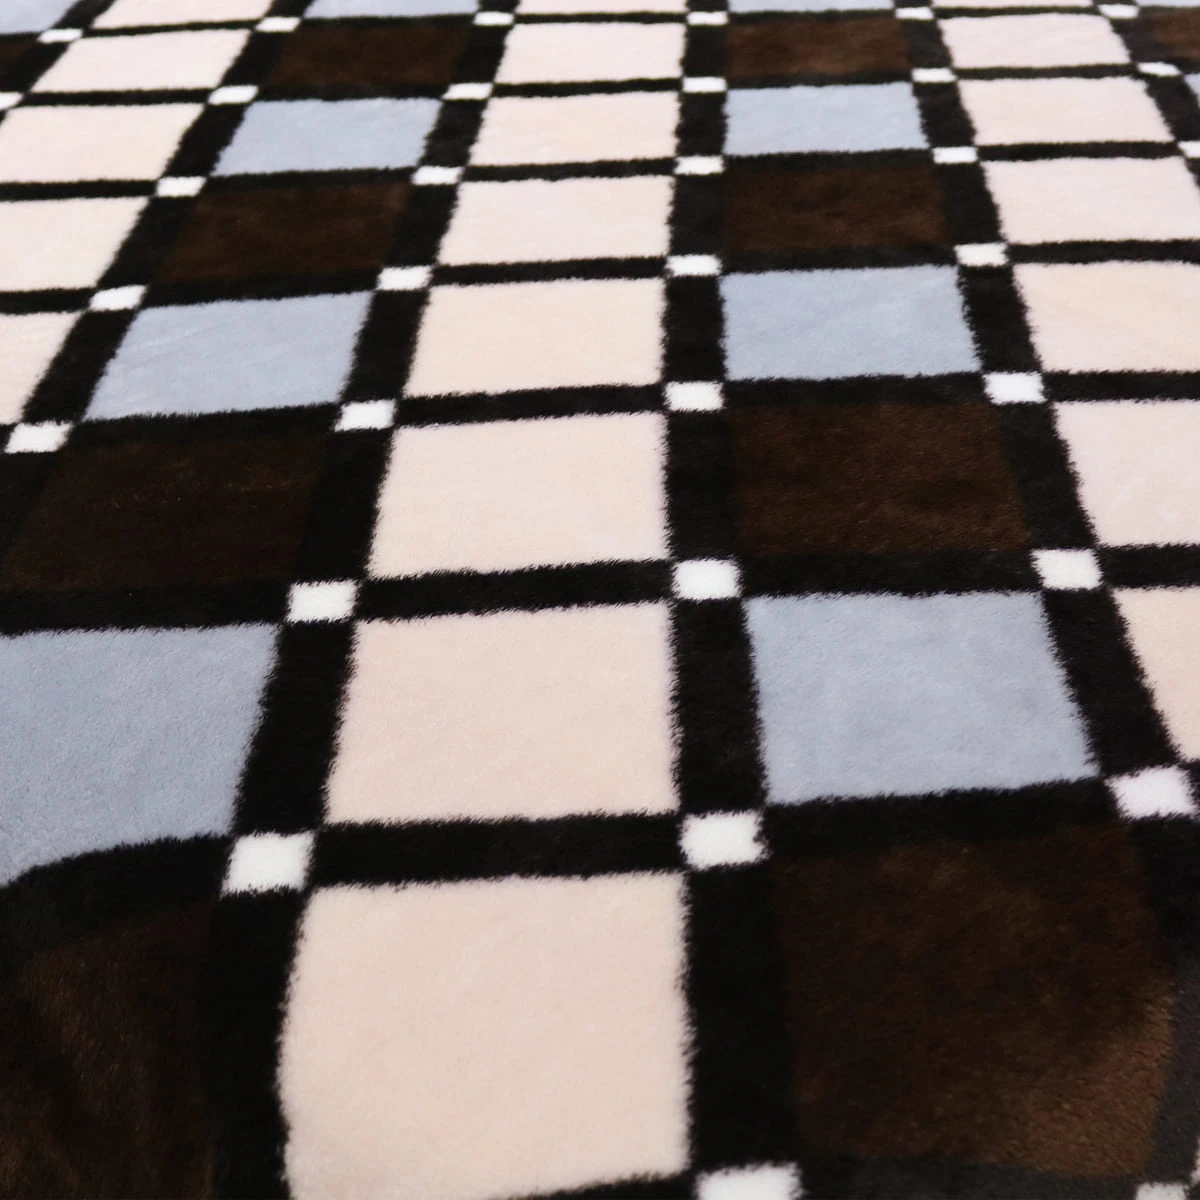 Diamond Tiles Pattern Printed Reversible to Plush Blanket